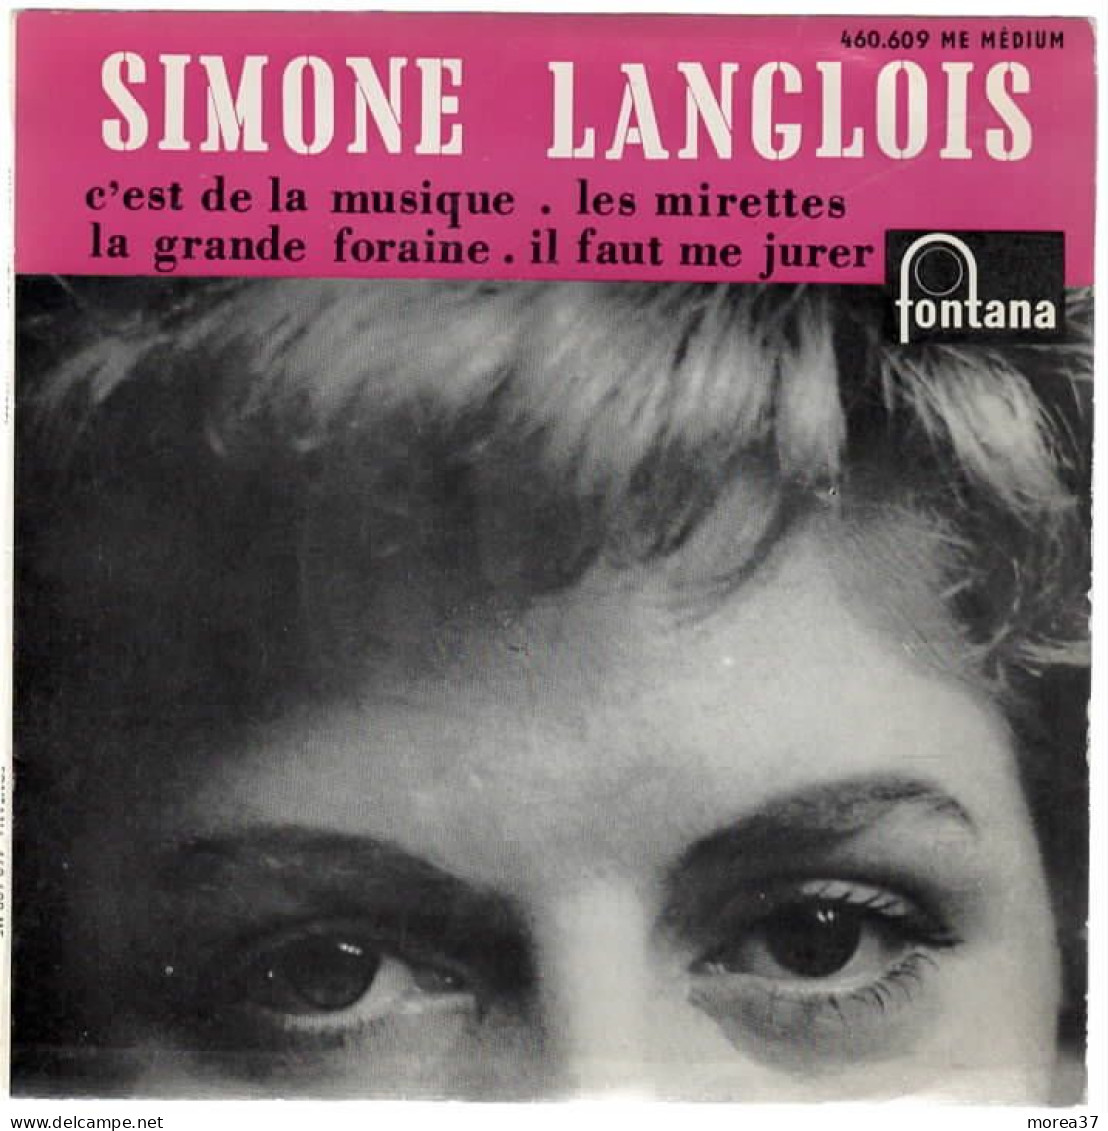 SIMONE LANGLOIS   Les Mirettes    FONTANA  460.609 ME - Autres - Musique Française